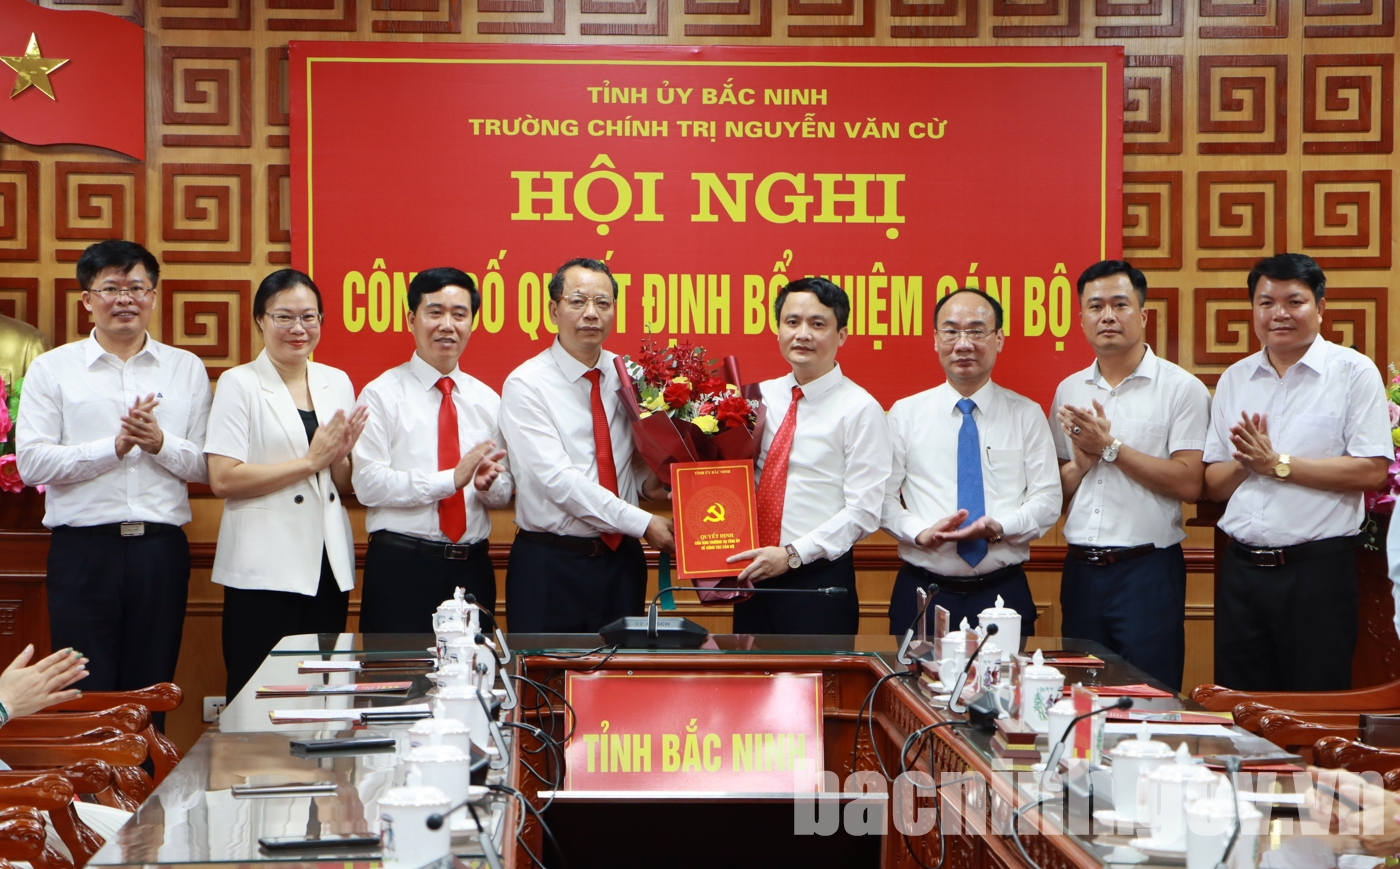 Trường Chính trị Nguyễn Văn Cừ có tân hiệu trưởng